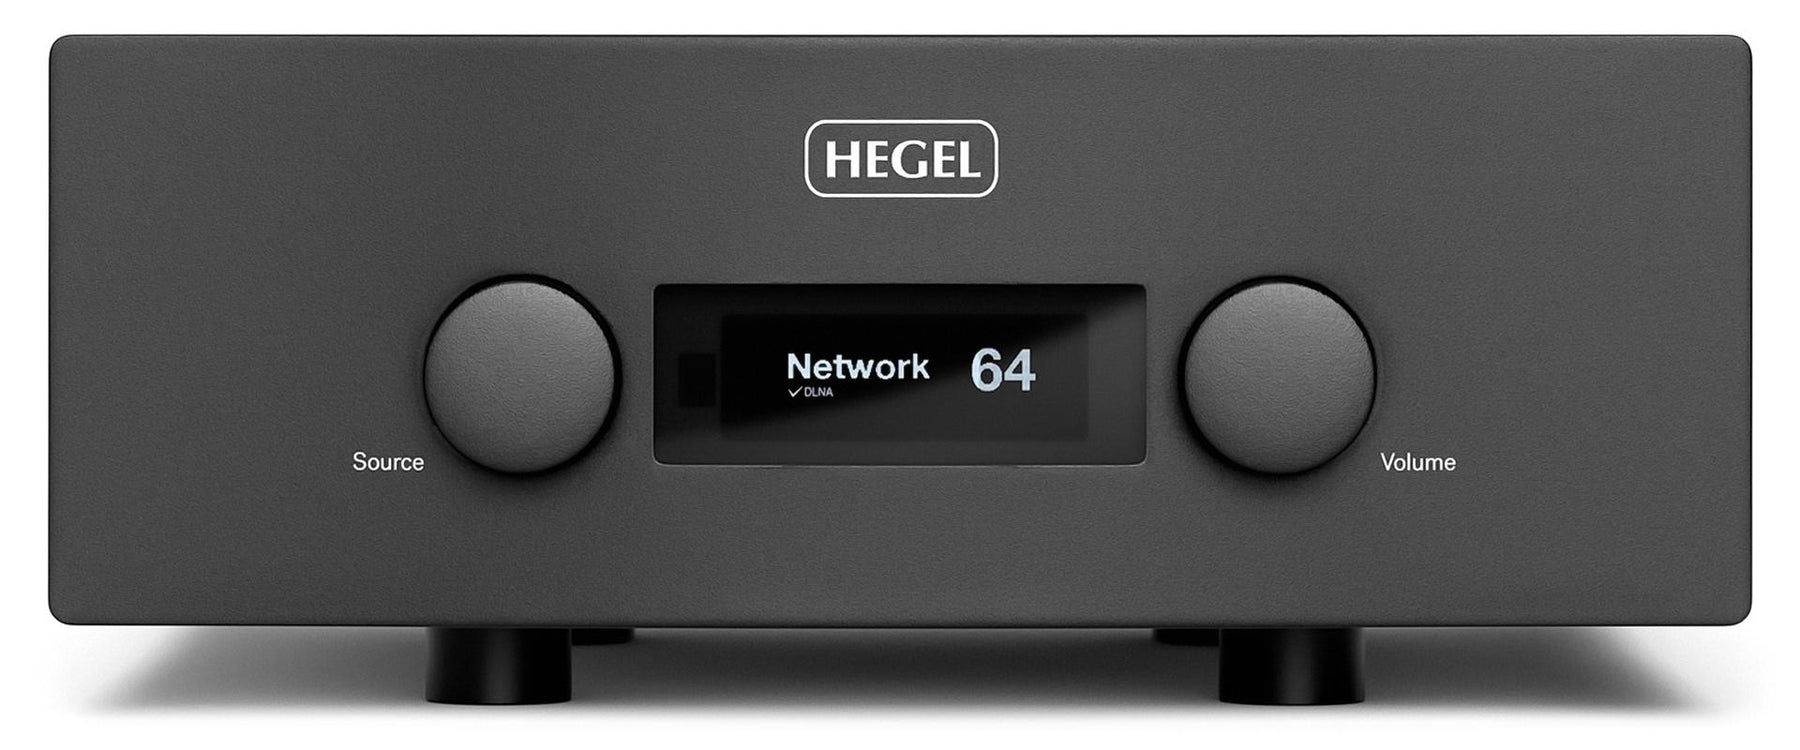 Revue de produit : HEGEL H-590 par Christo GM